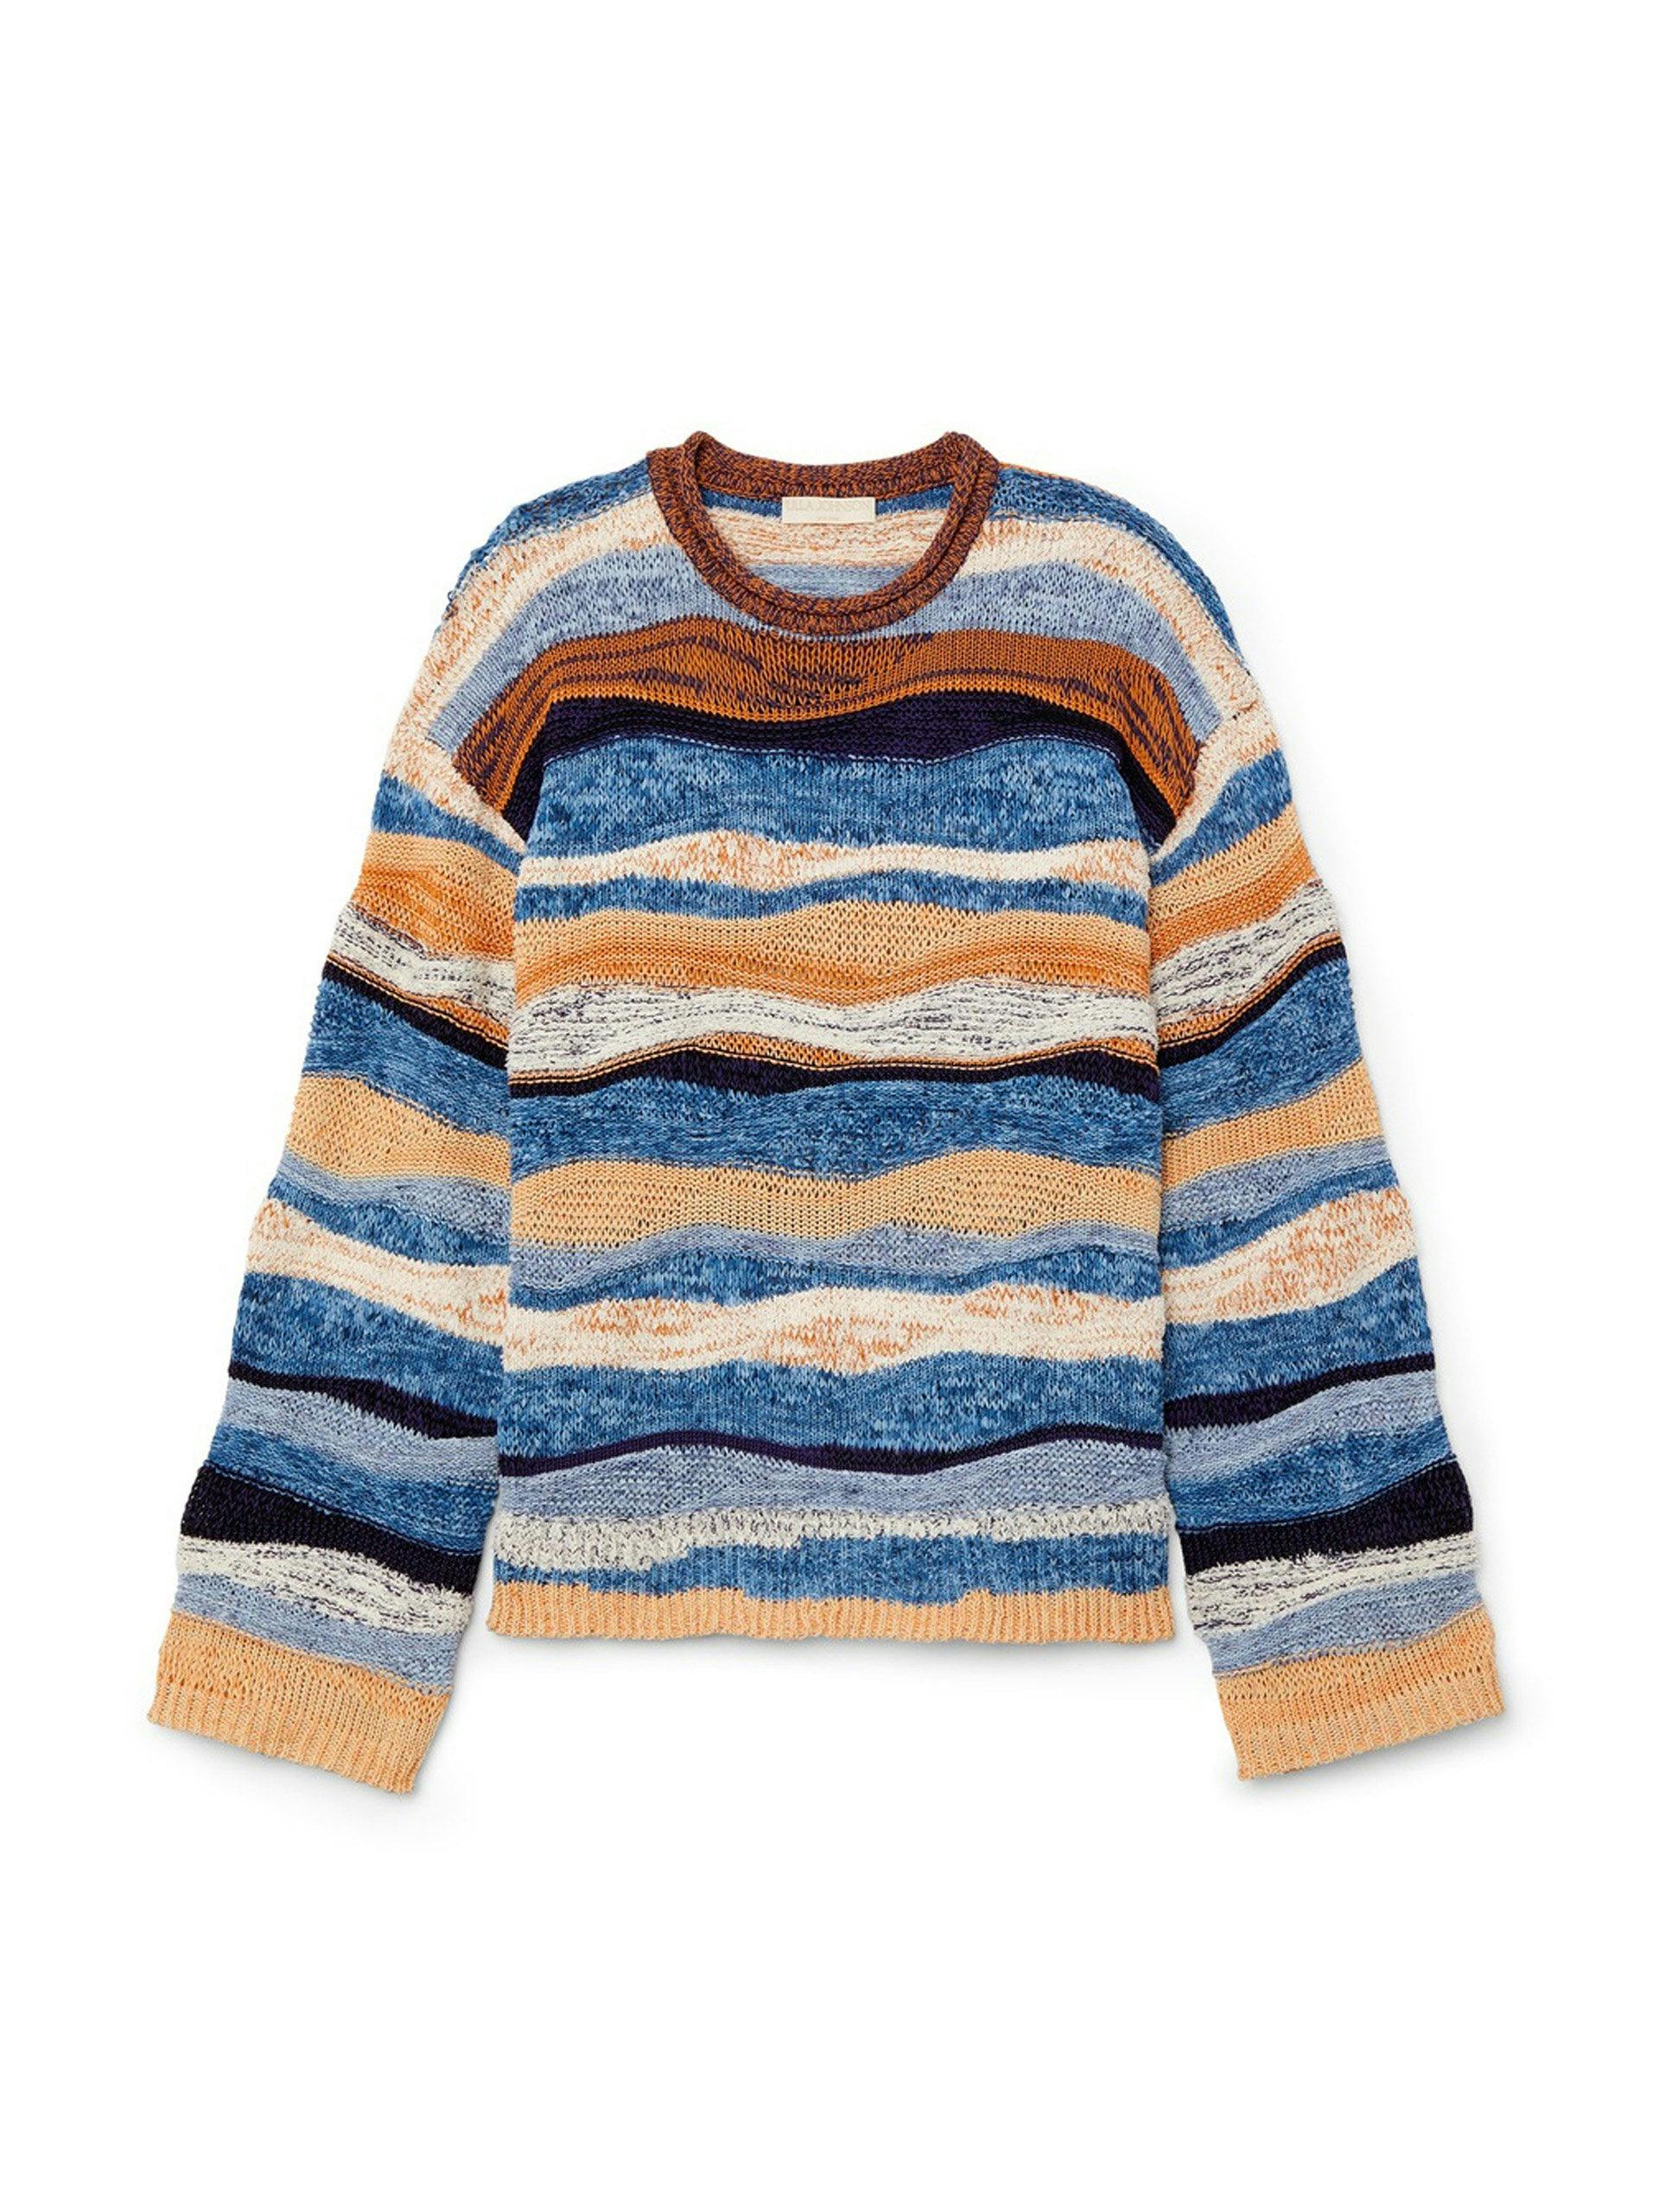 Blue striped knit jumper